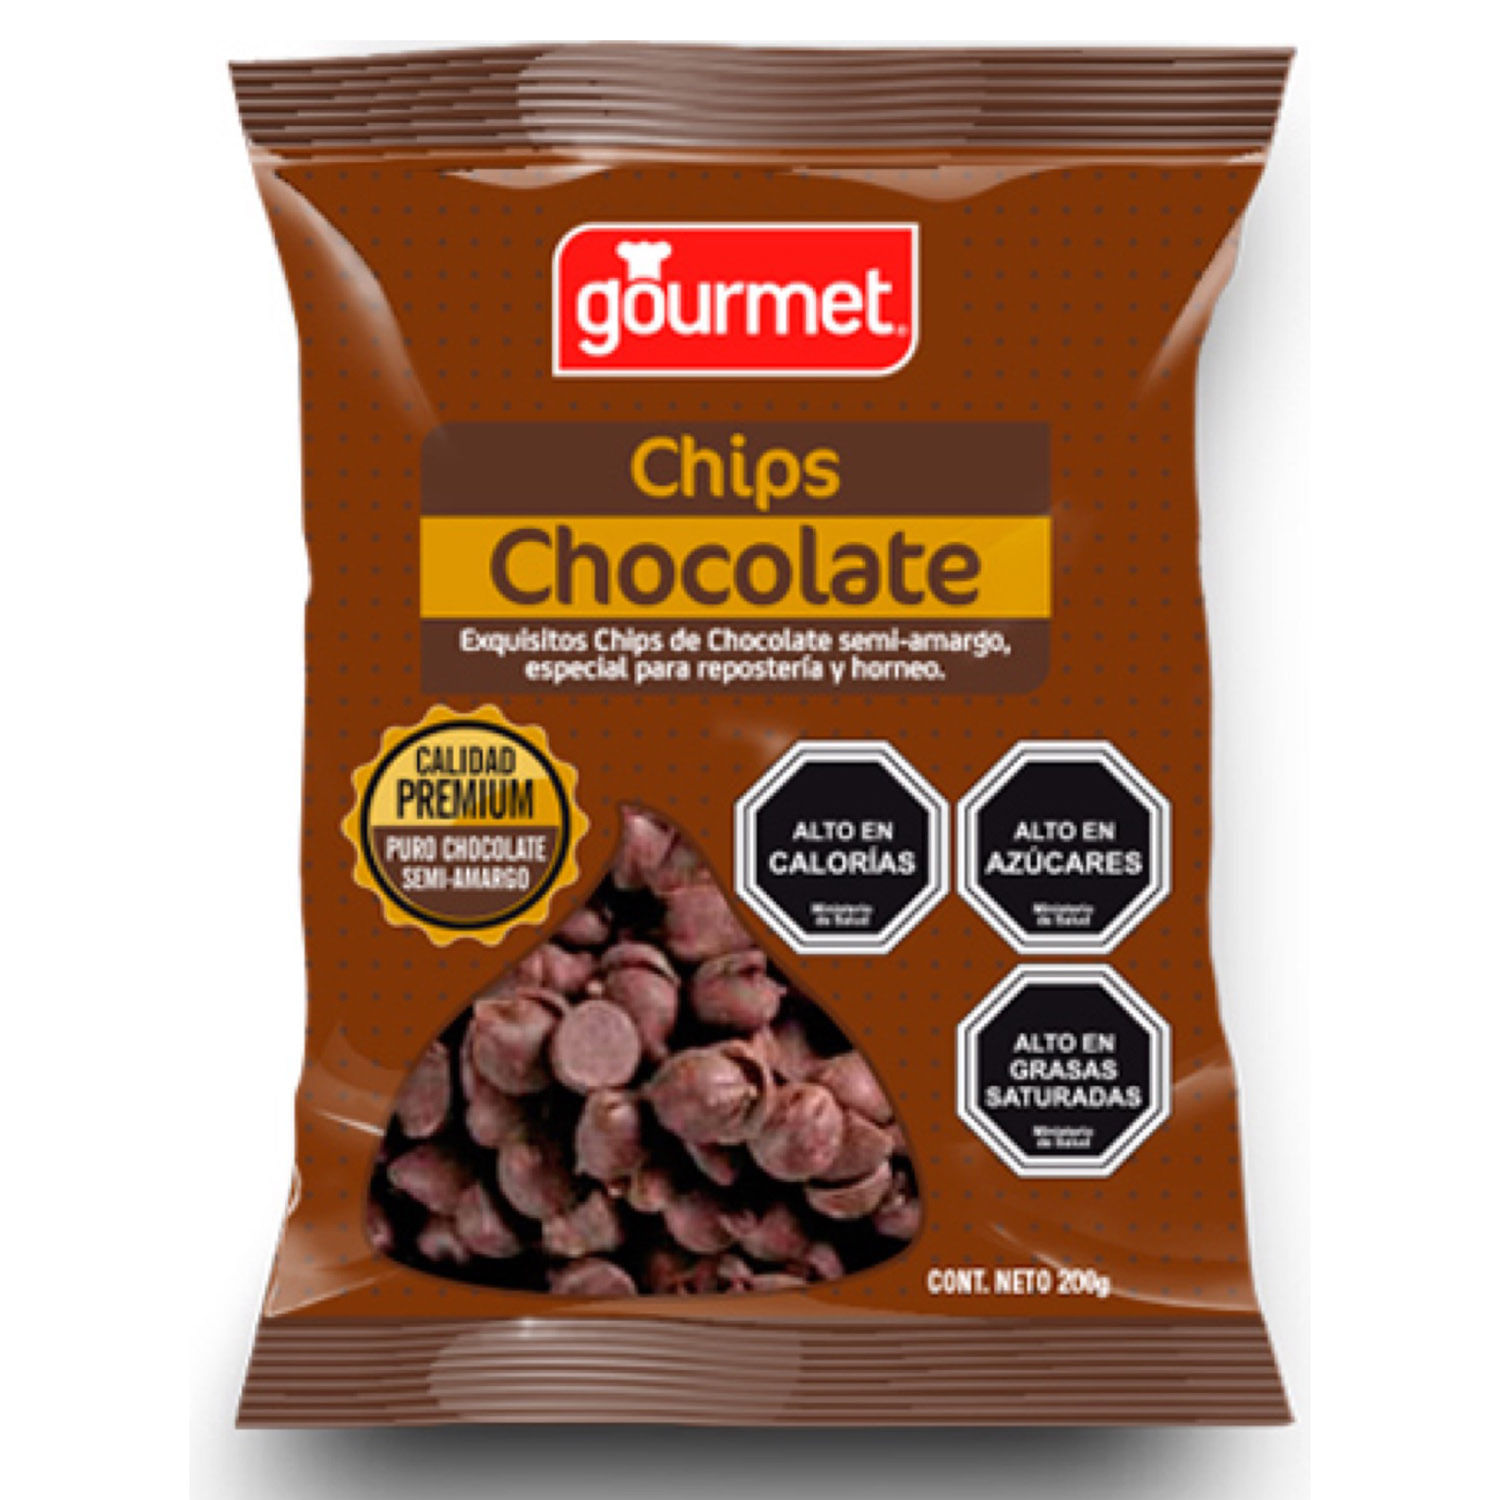 Chocolate Valor Puro - 200 g